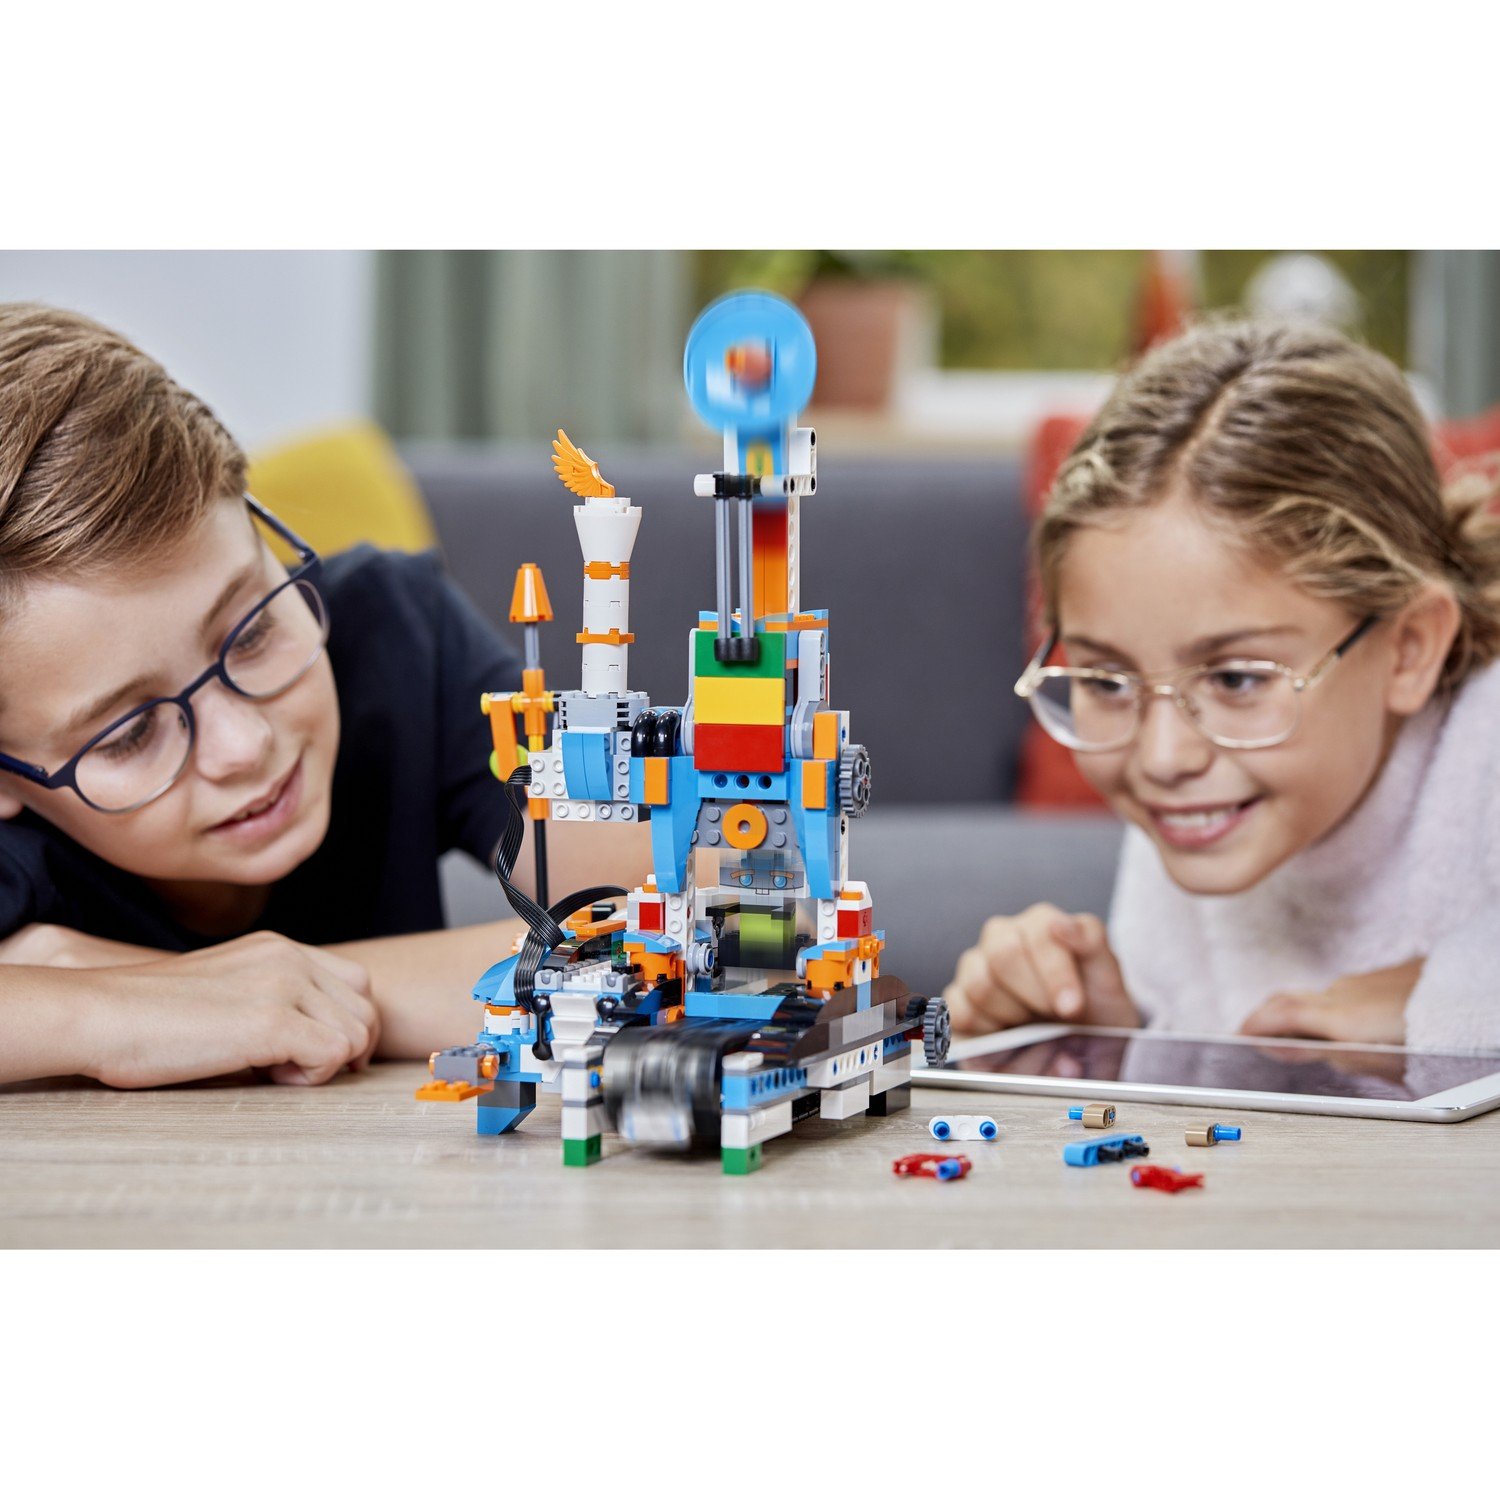 Конструктор LEGO BOOST  Набор для конструирования и программирования (17101) - фото 14